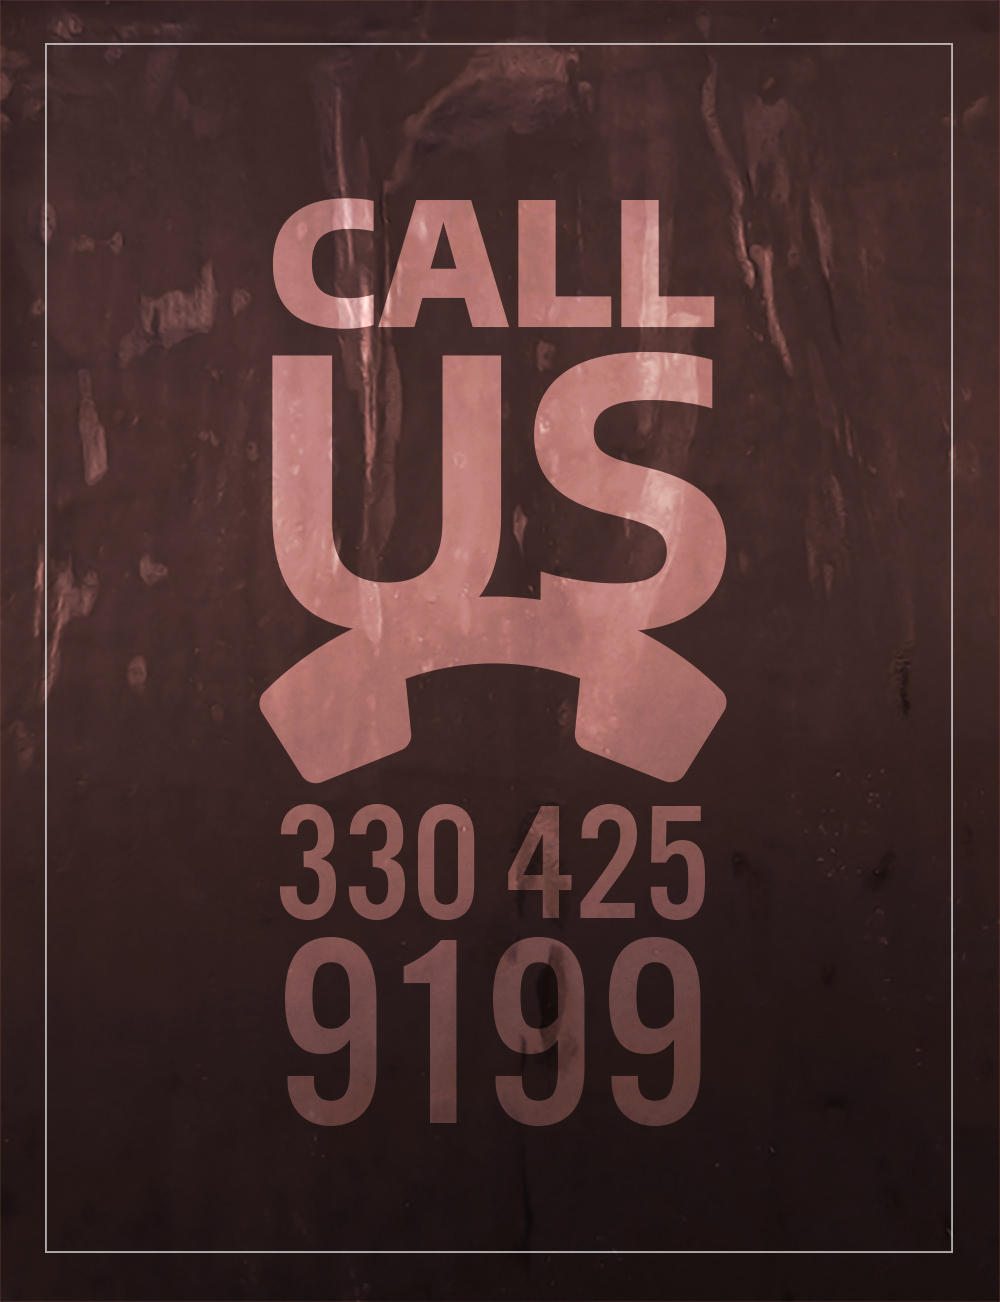 Call Us: (330) 425-9199